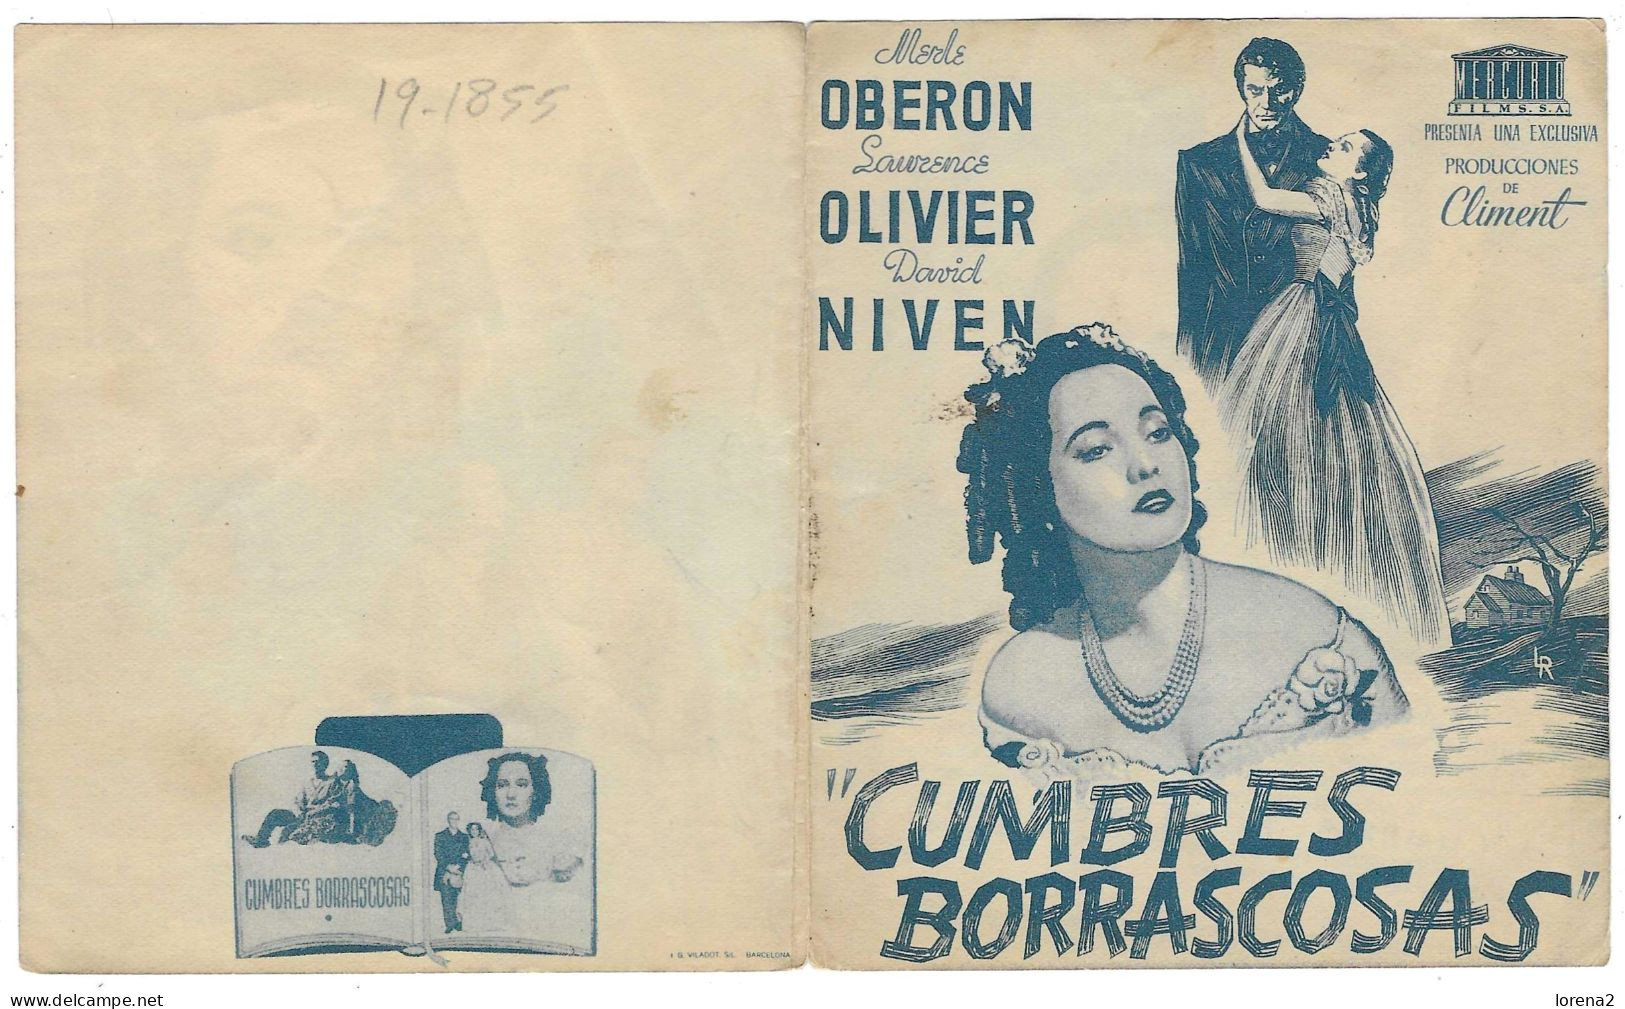 Programa Cine. Cumbres Borrascosas. Laurence Olivier. 19-1855 - Publicité Cinématographique